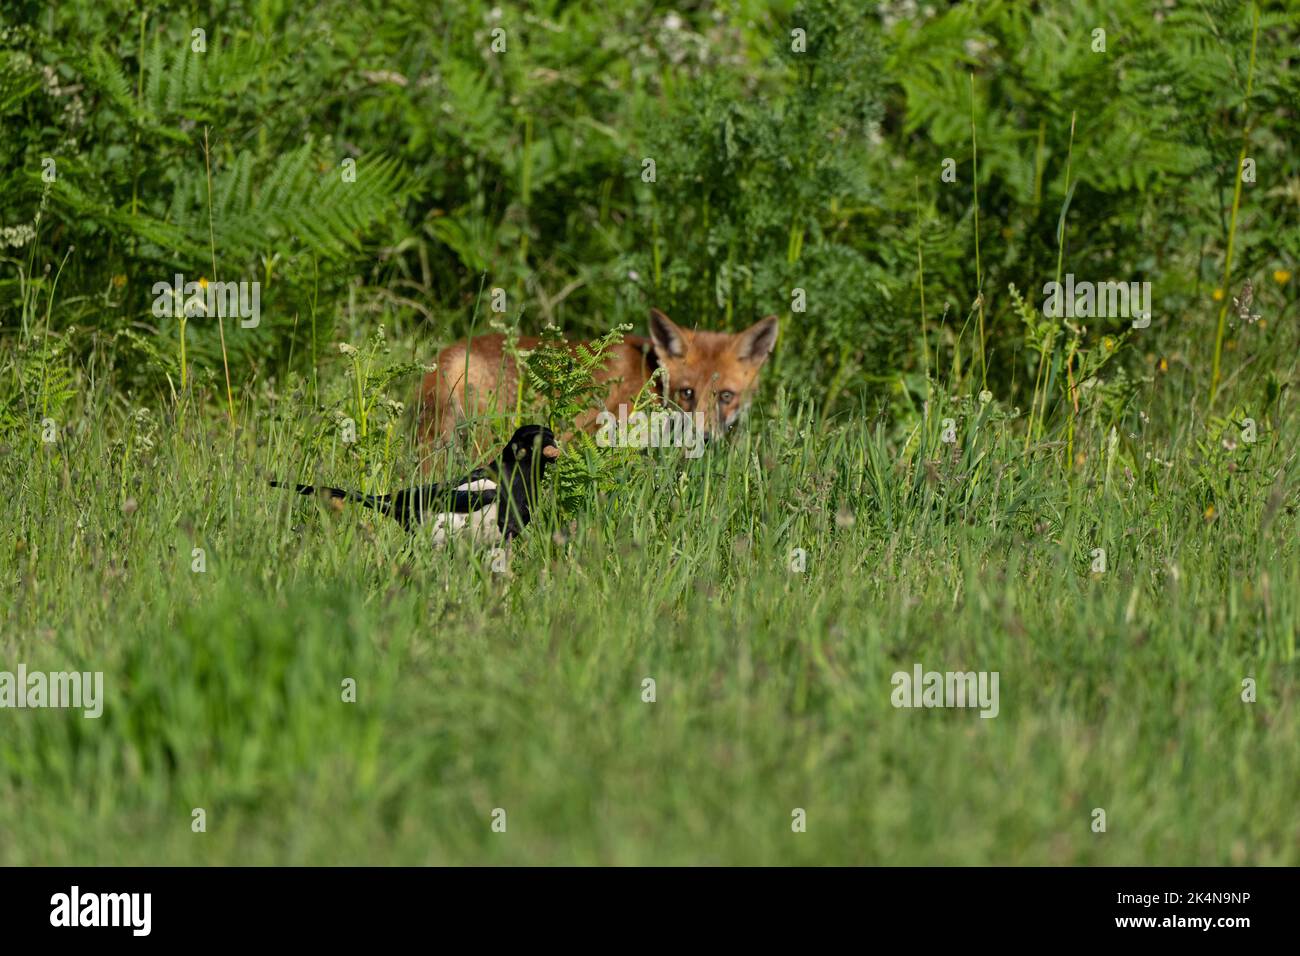 Fox cub-Vulpes vulpes hunts a Magpie-Pica pica Stock Photo